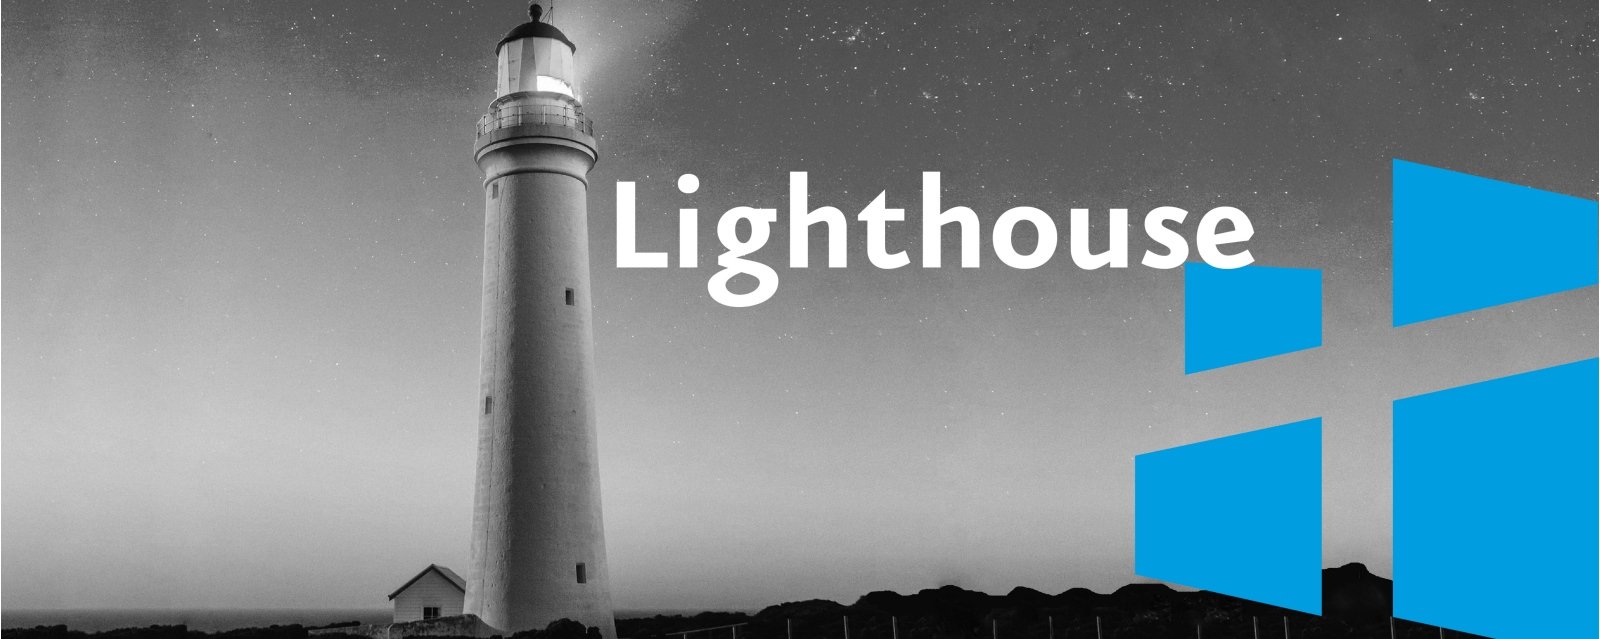 Lighthouse_Bühne